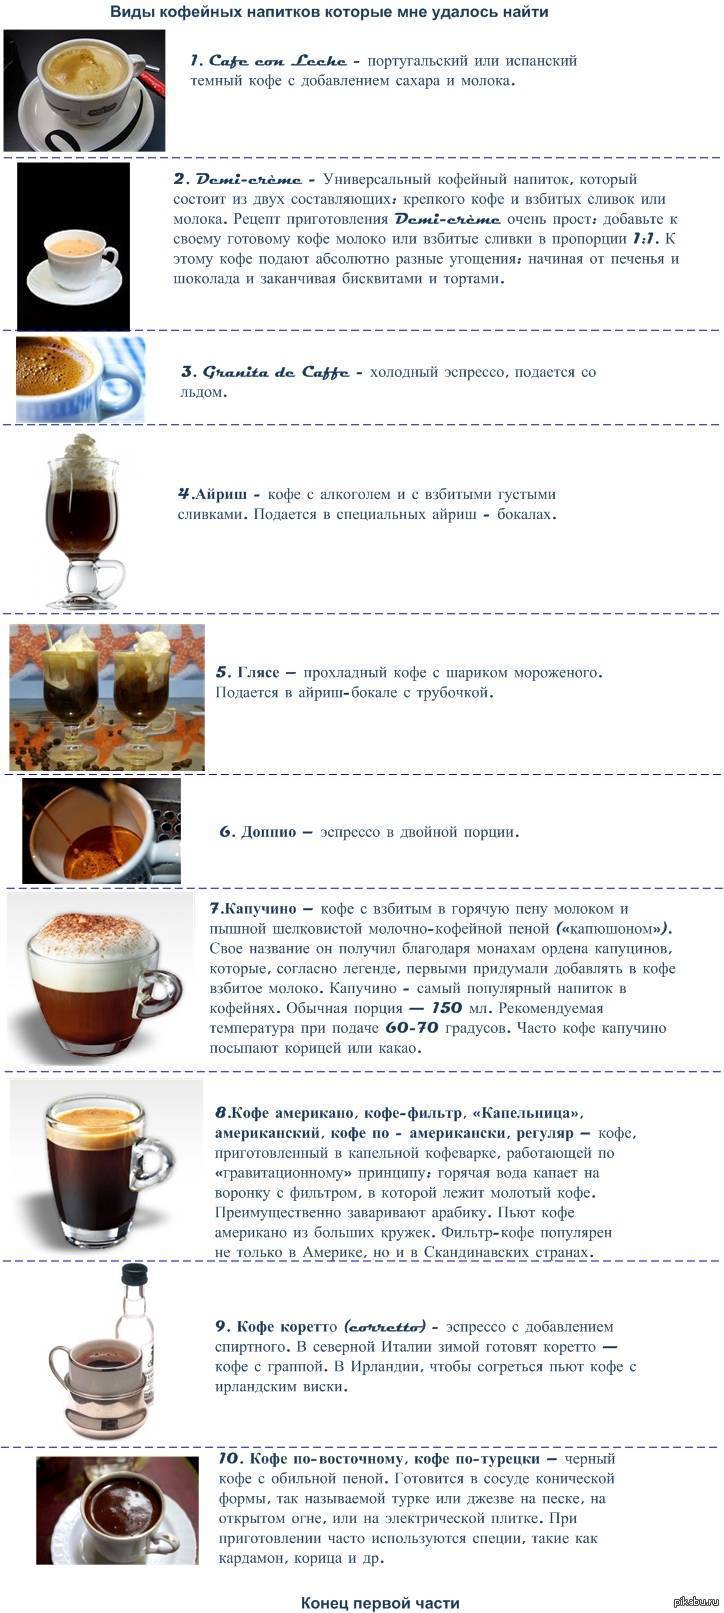 Кофе лунго: описание и правильный рецепт приготовления дома